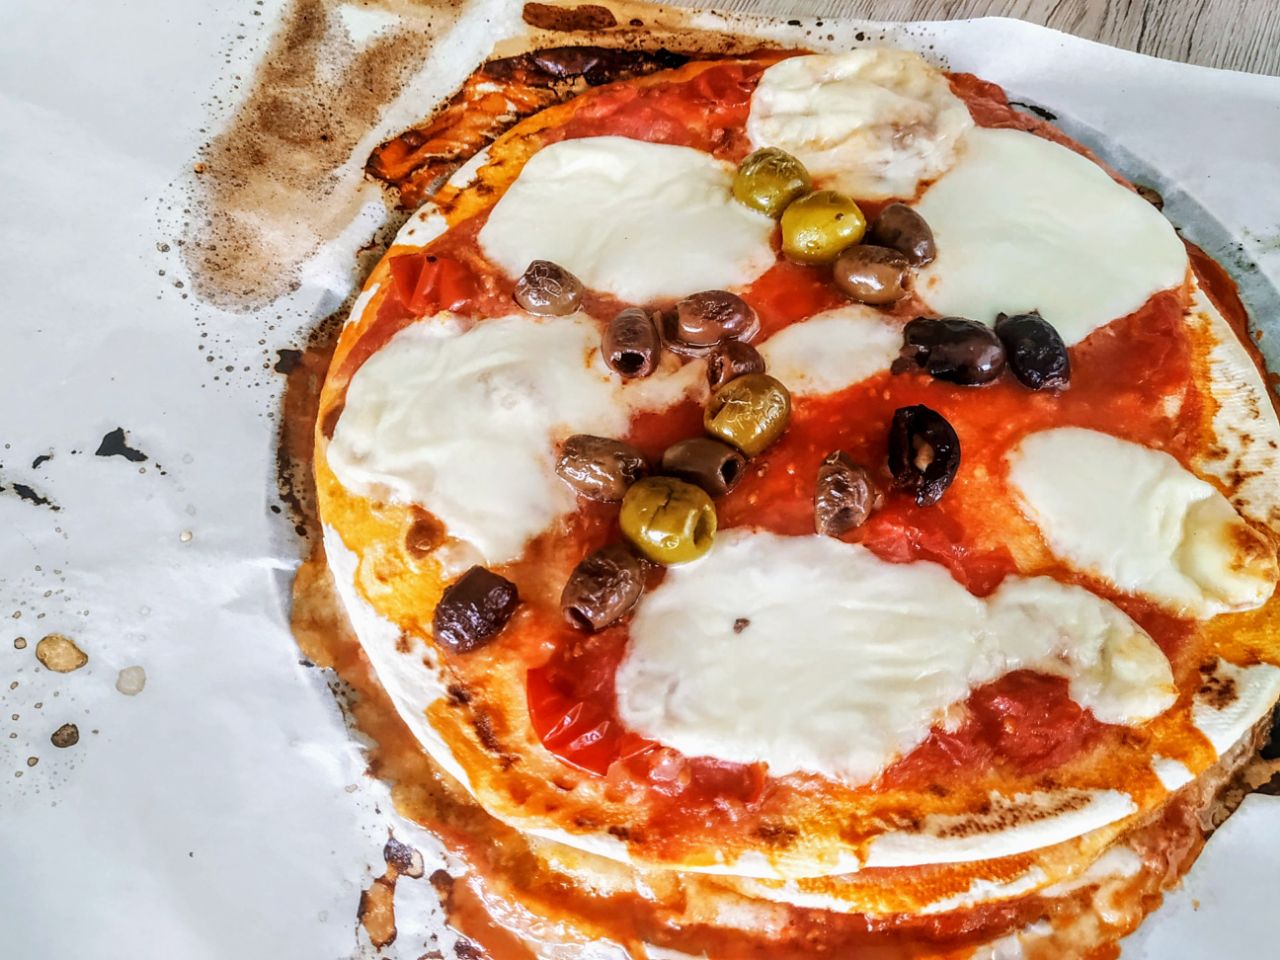 Piadipizza con mozzarella pomodoro pelati e olive denocciolate